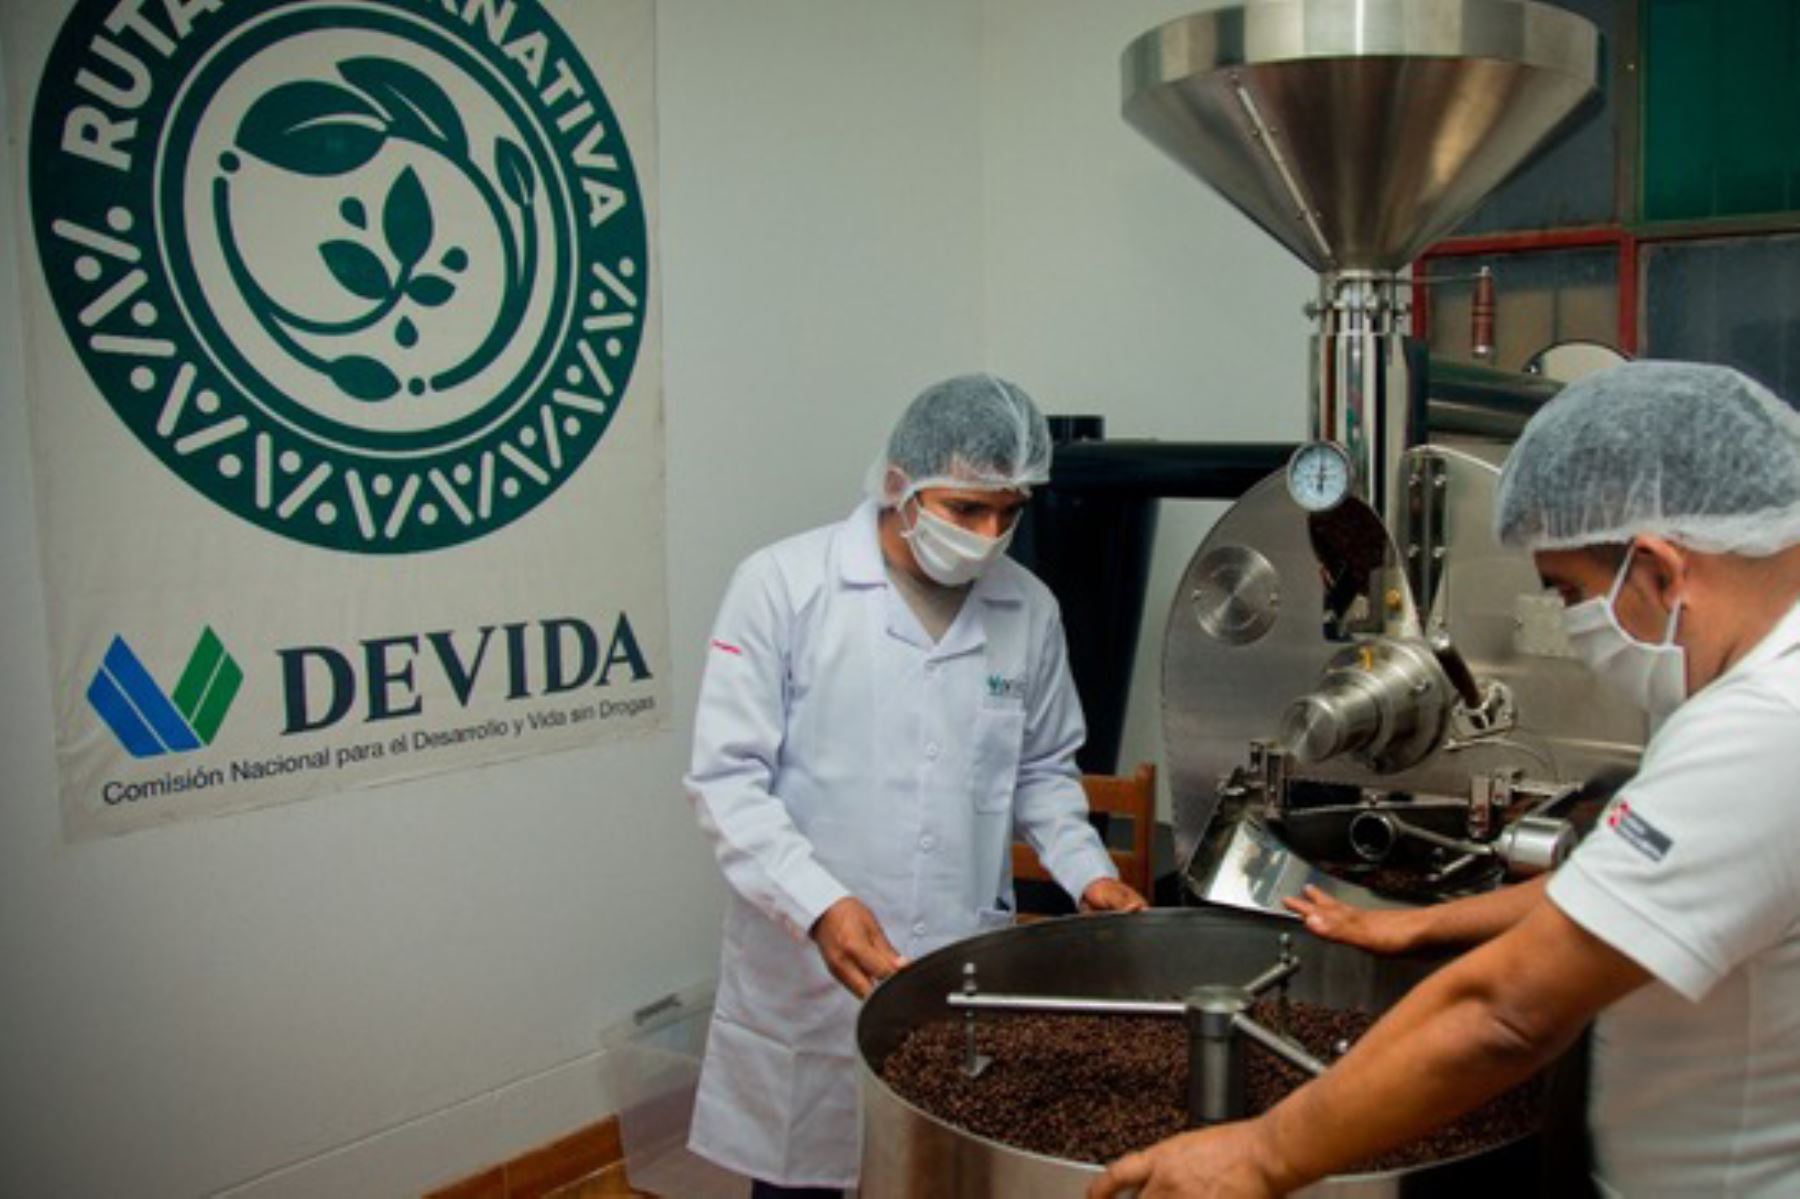 La inversión se hizo en un plazo de 3 años para potenciar a las organizaciones de productores del Vraem. Foto: ANDINA/Devida